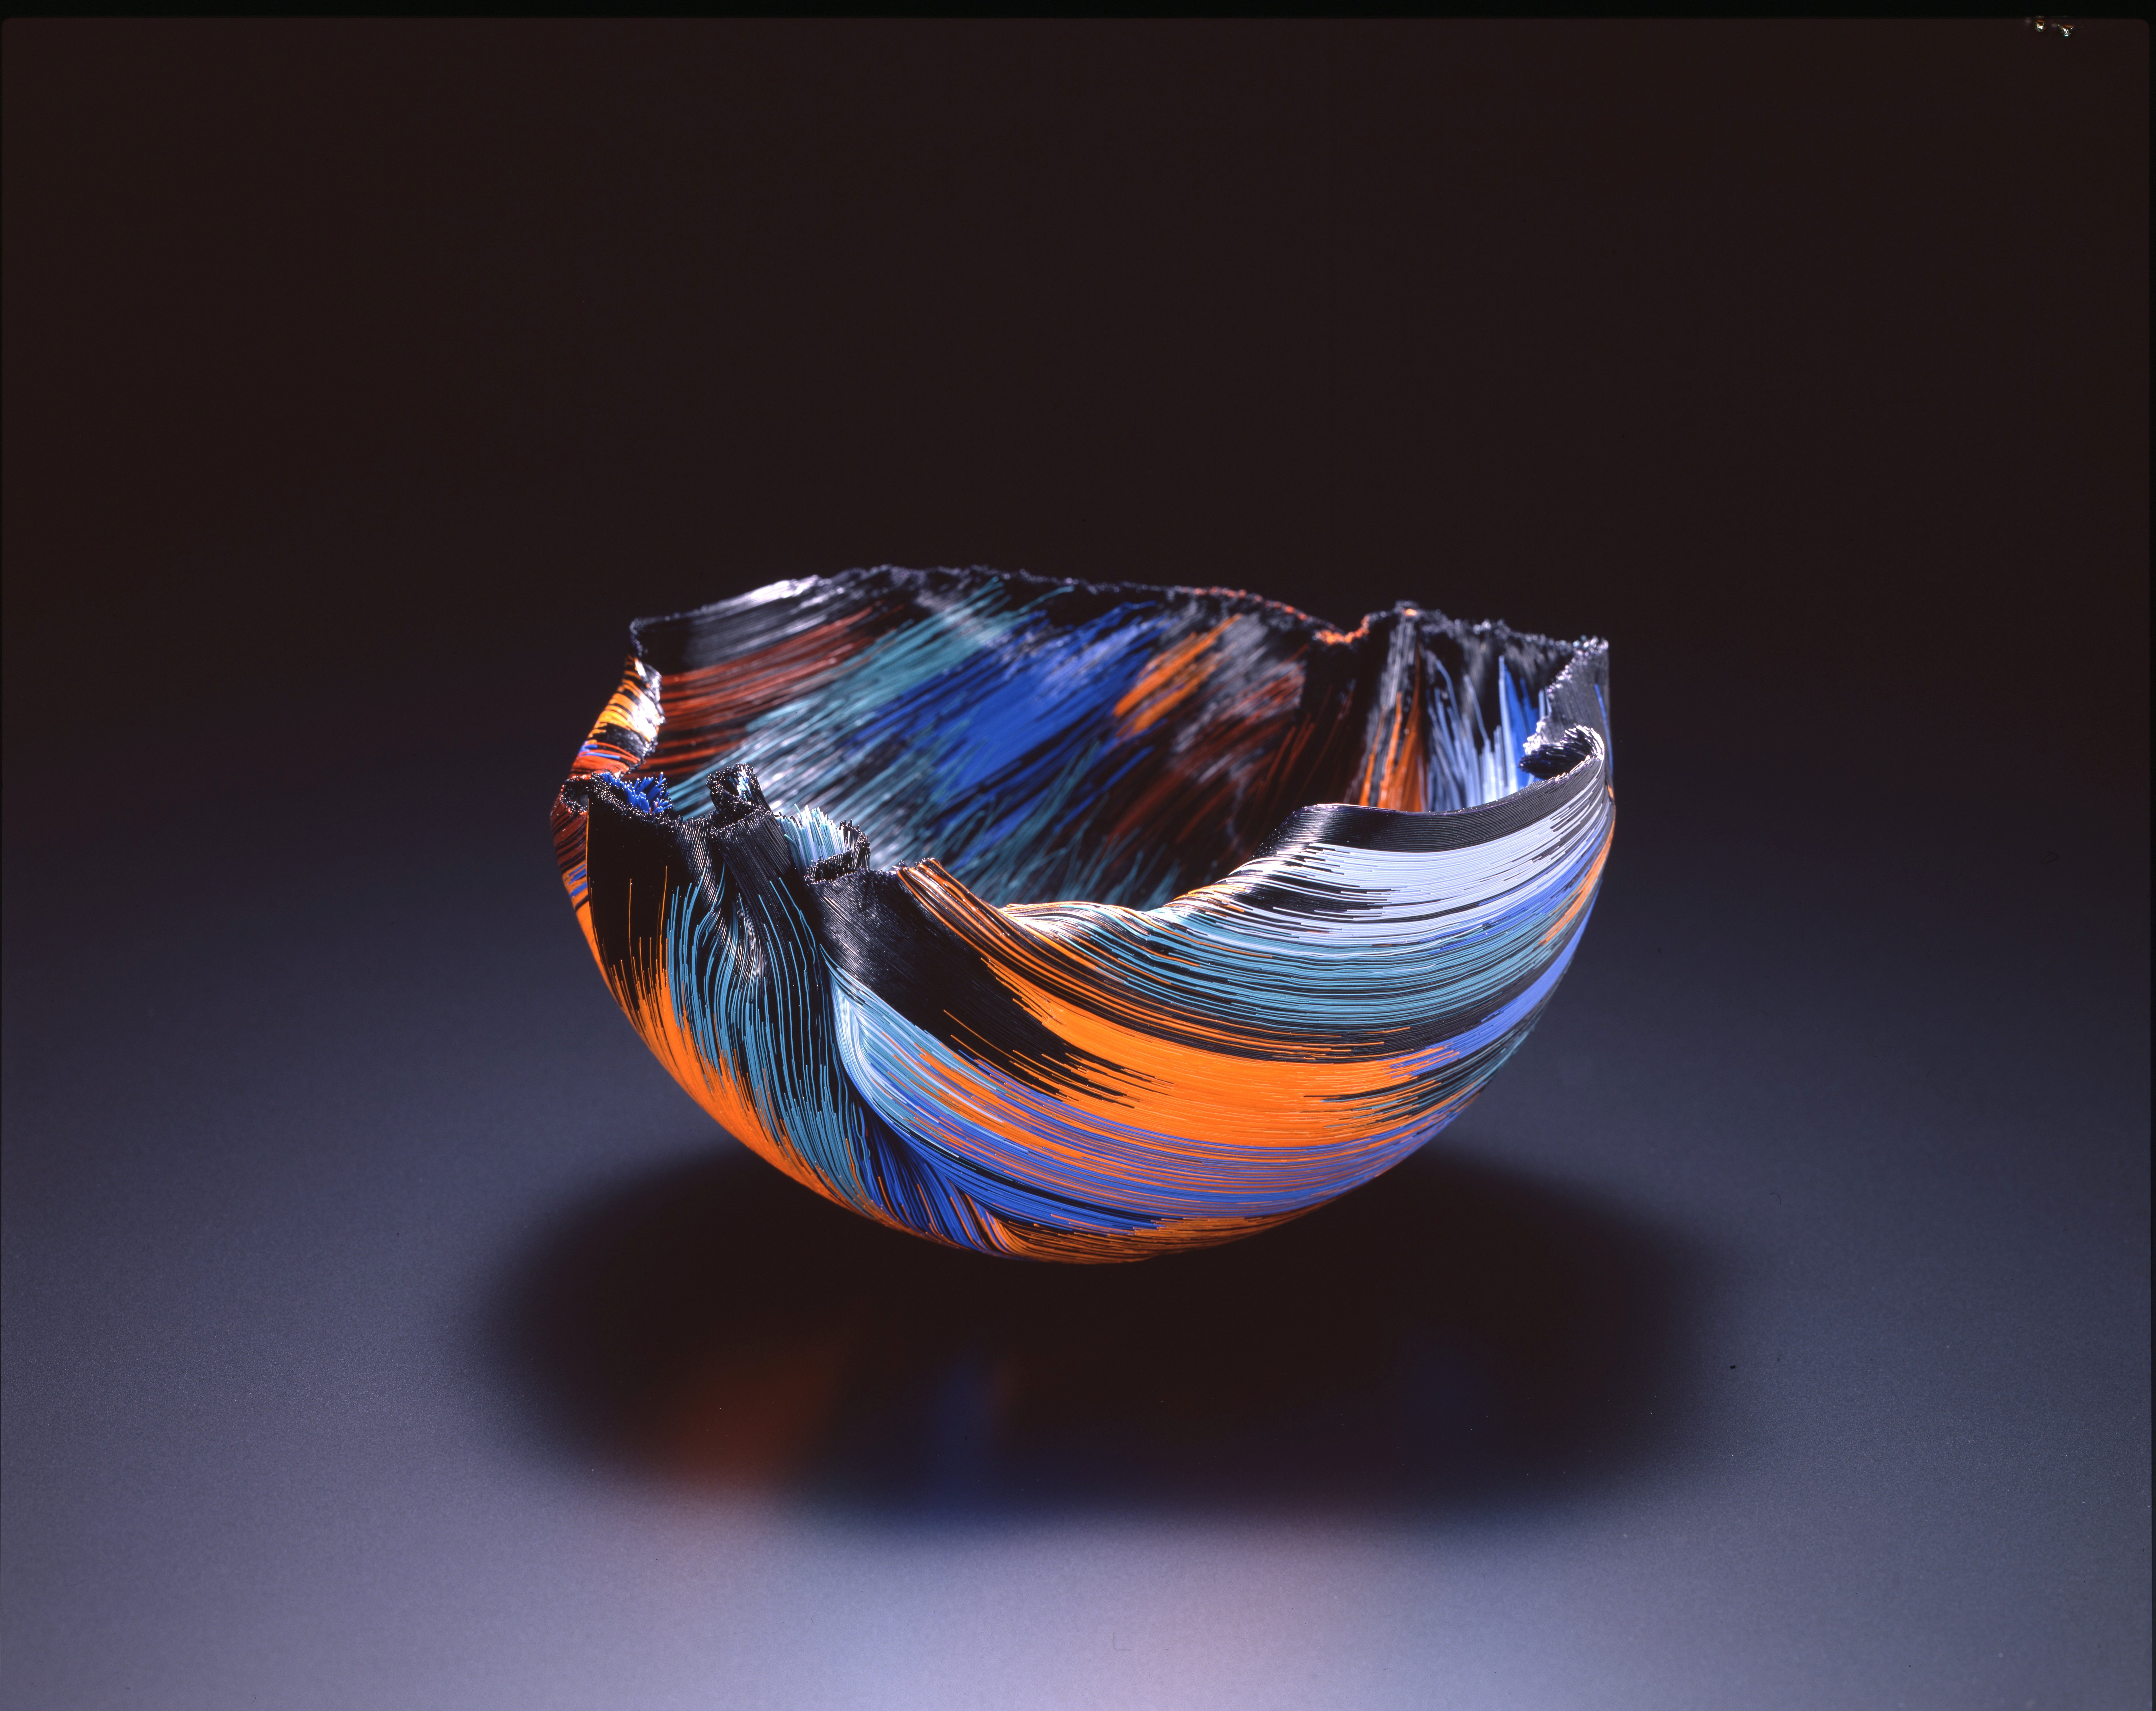 现代玻璃艺术之美<br>Toots Zynsky【火地群岛的系列作品】1988年